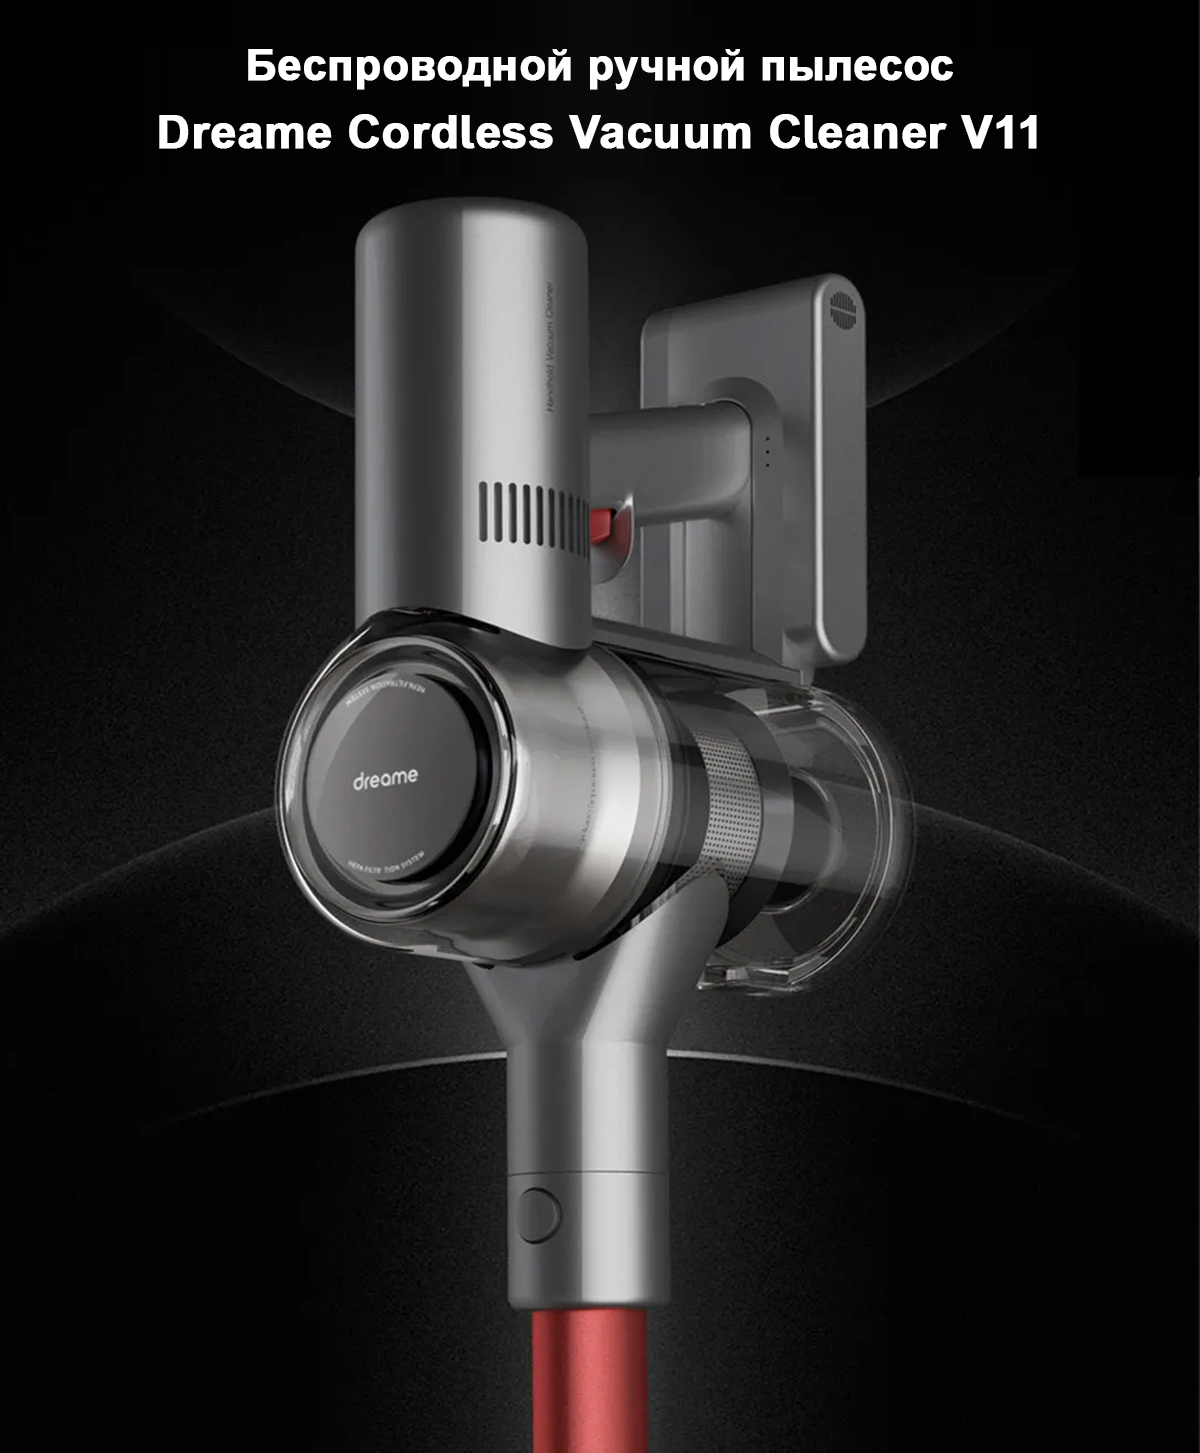 Беспроводной ручной пылесос Dreame Cordless Vacuum Cleaner V11